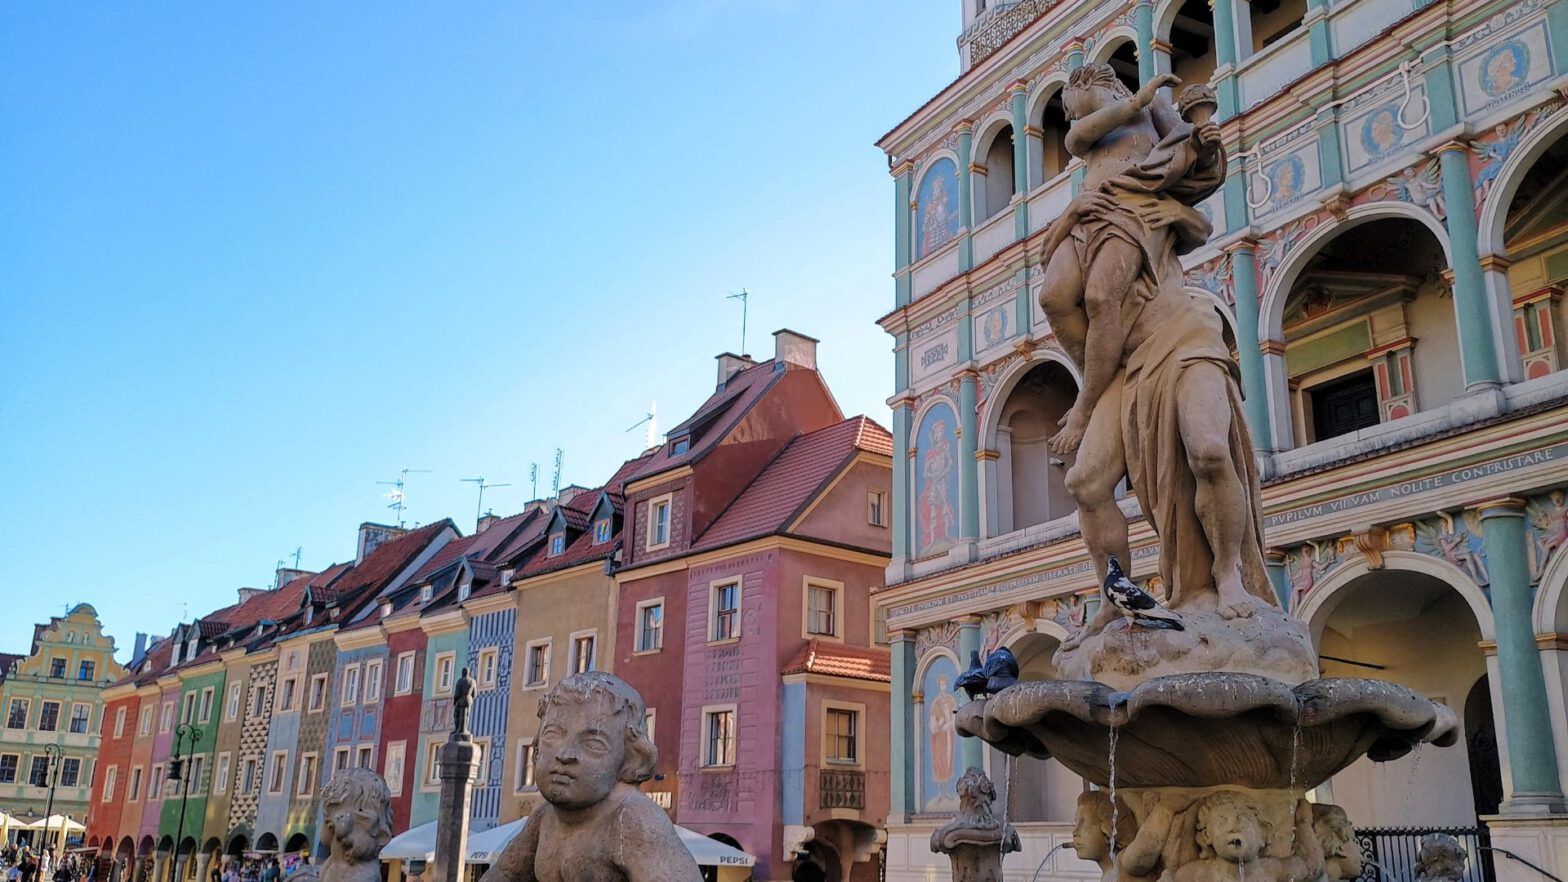 Häuser und Brunnenfiguren auf dem Marktplatz von Poznan.